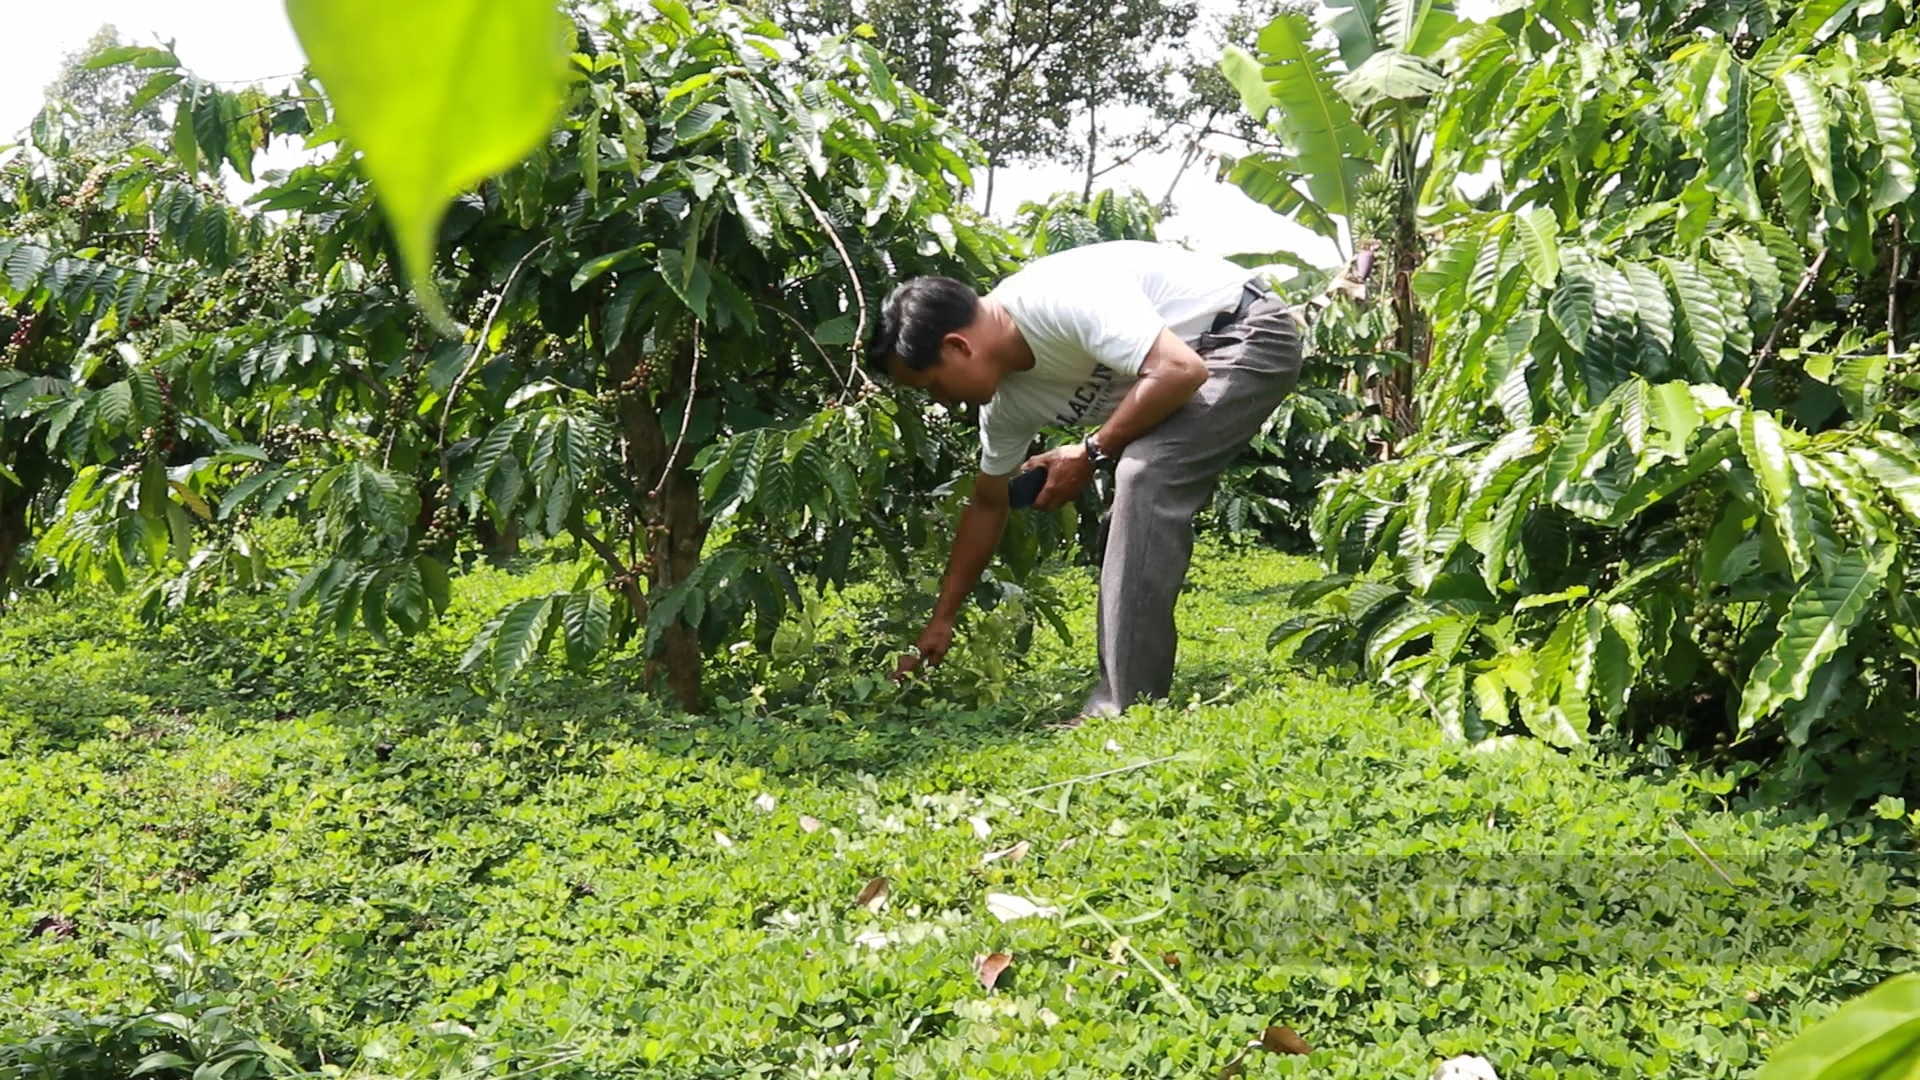 Lâm Đồng: “Siết chặt” quản lý việc sử dụng hoạt chất Glyphosate để diệt cỏ trên vườn cà phê - Ảnh 2.